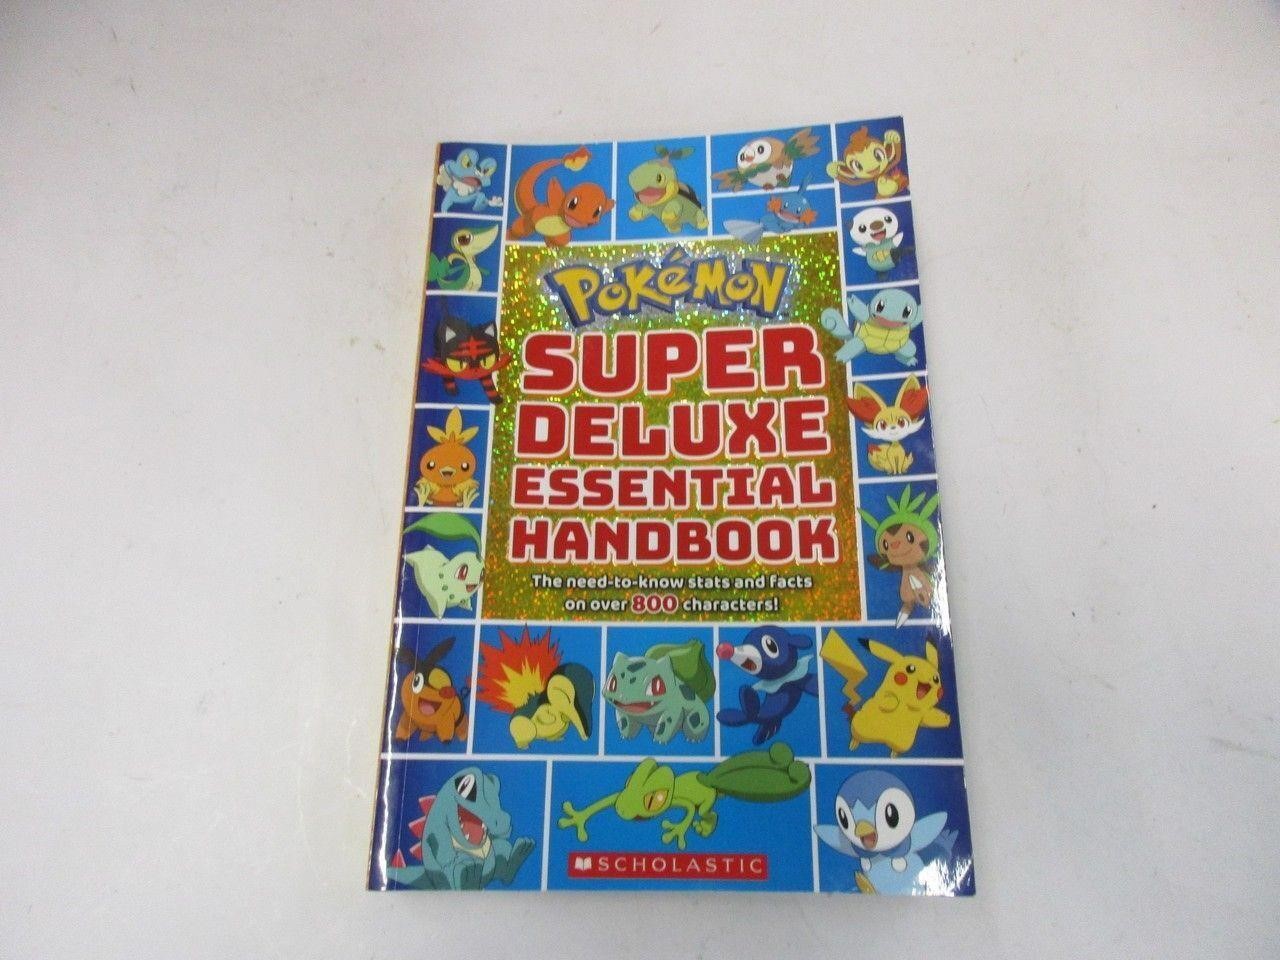 Pokémon Super deluxe essential handbook